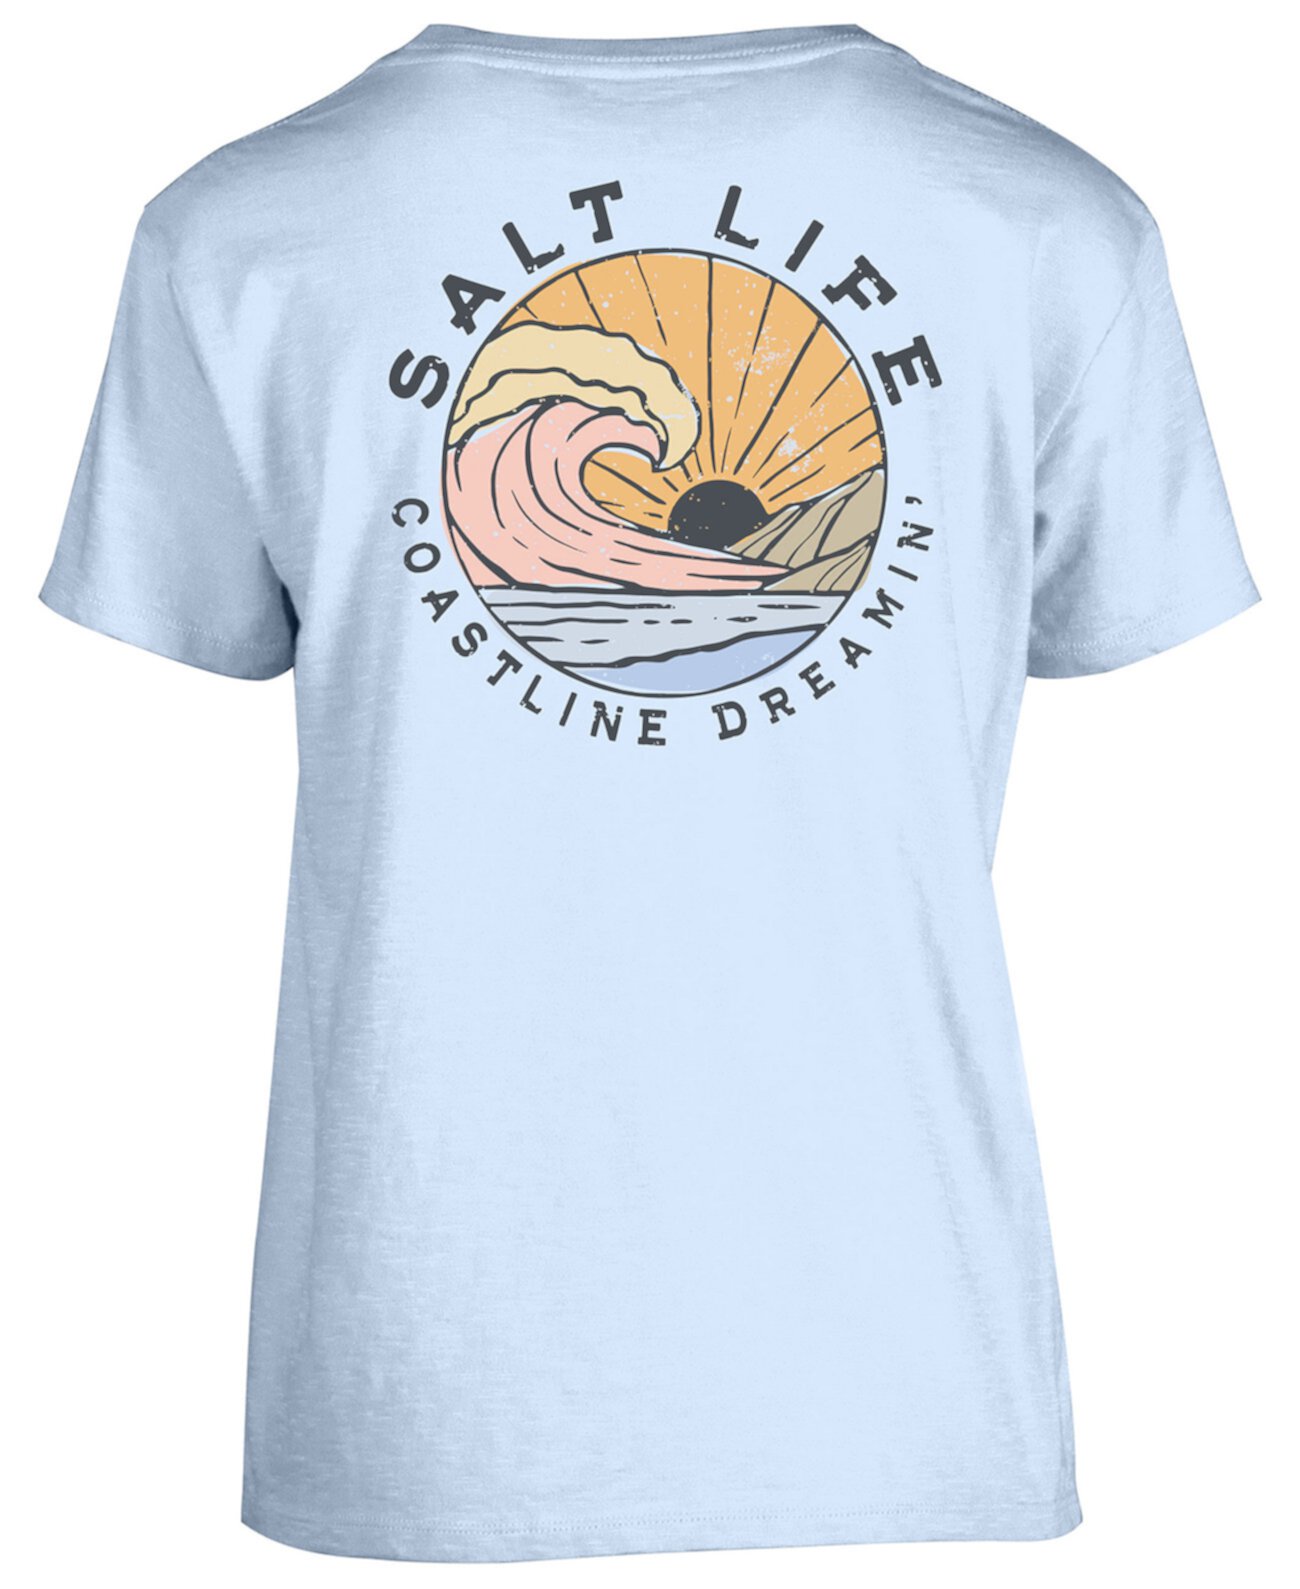 Женская хлопковая футболка Coastline Dreamin Salt Life